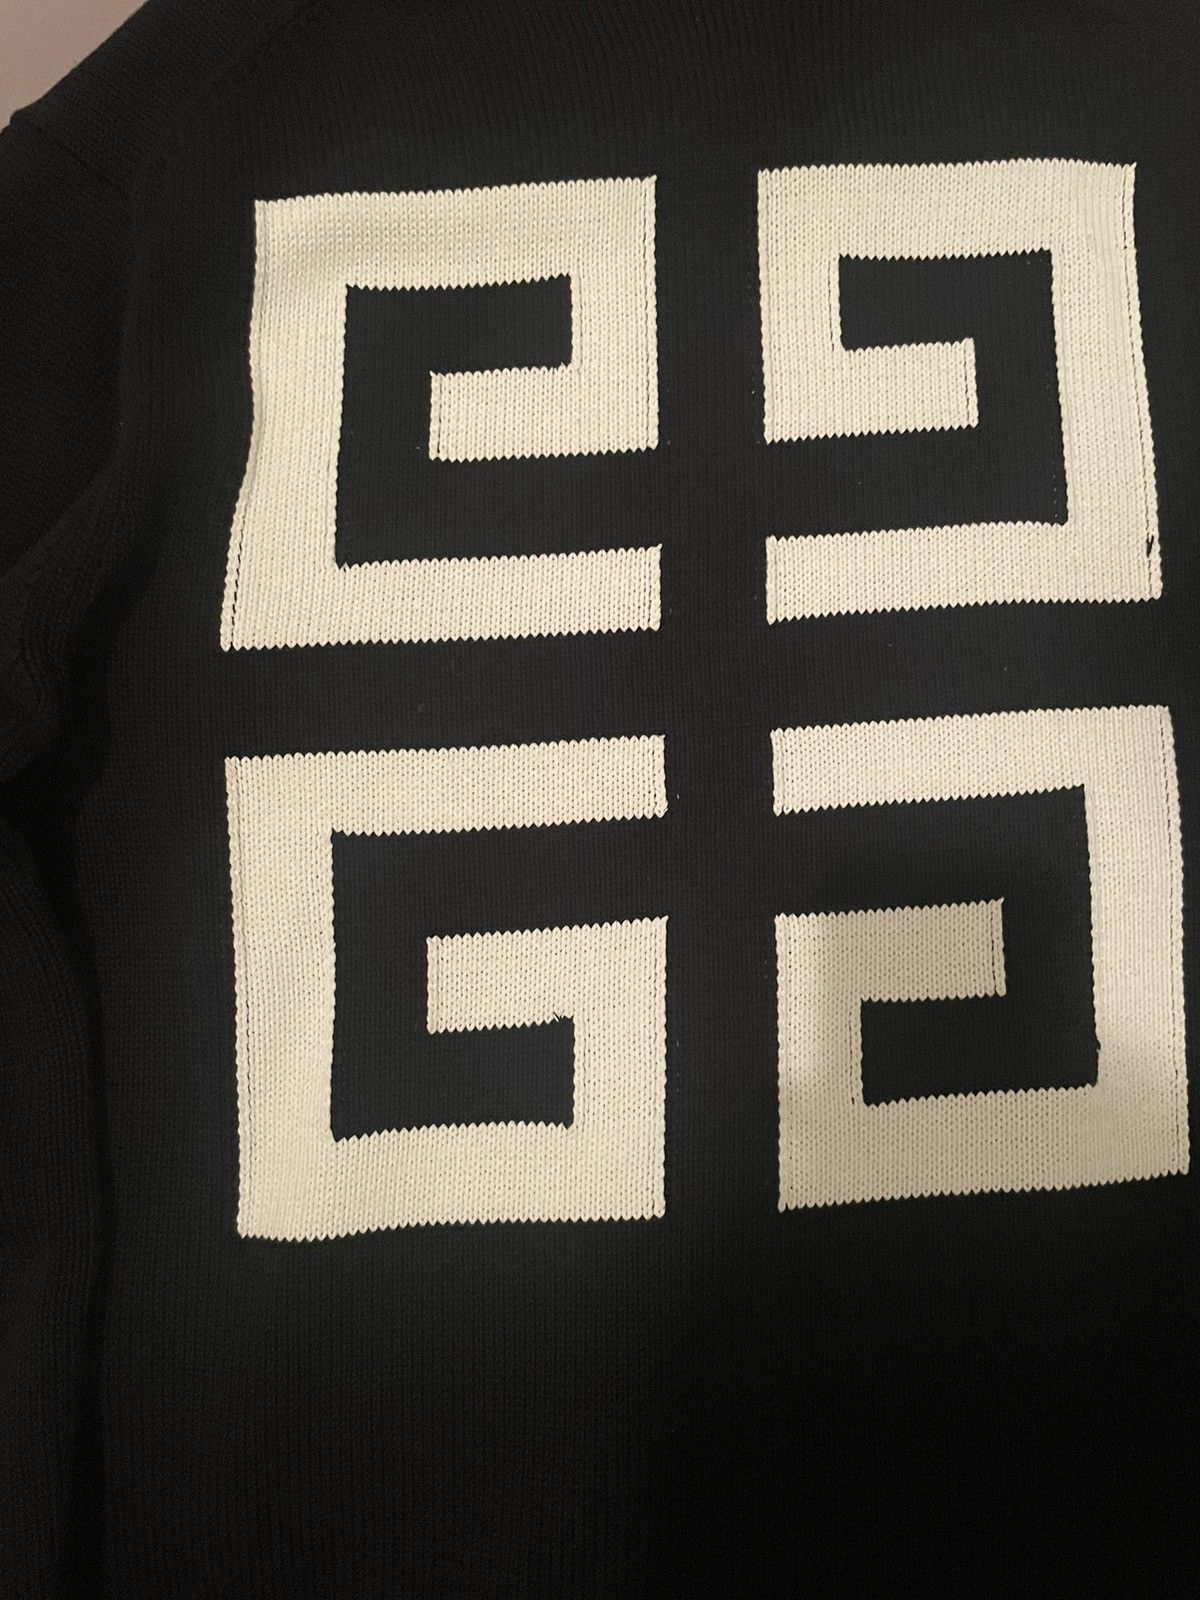 Givenchy 4g logo-intarsia cotton sweater Size US M / EU 48-50 / 2 - 4 Thumbnail